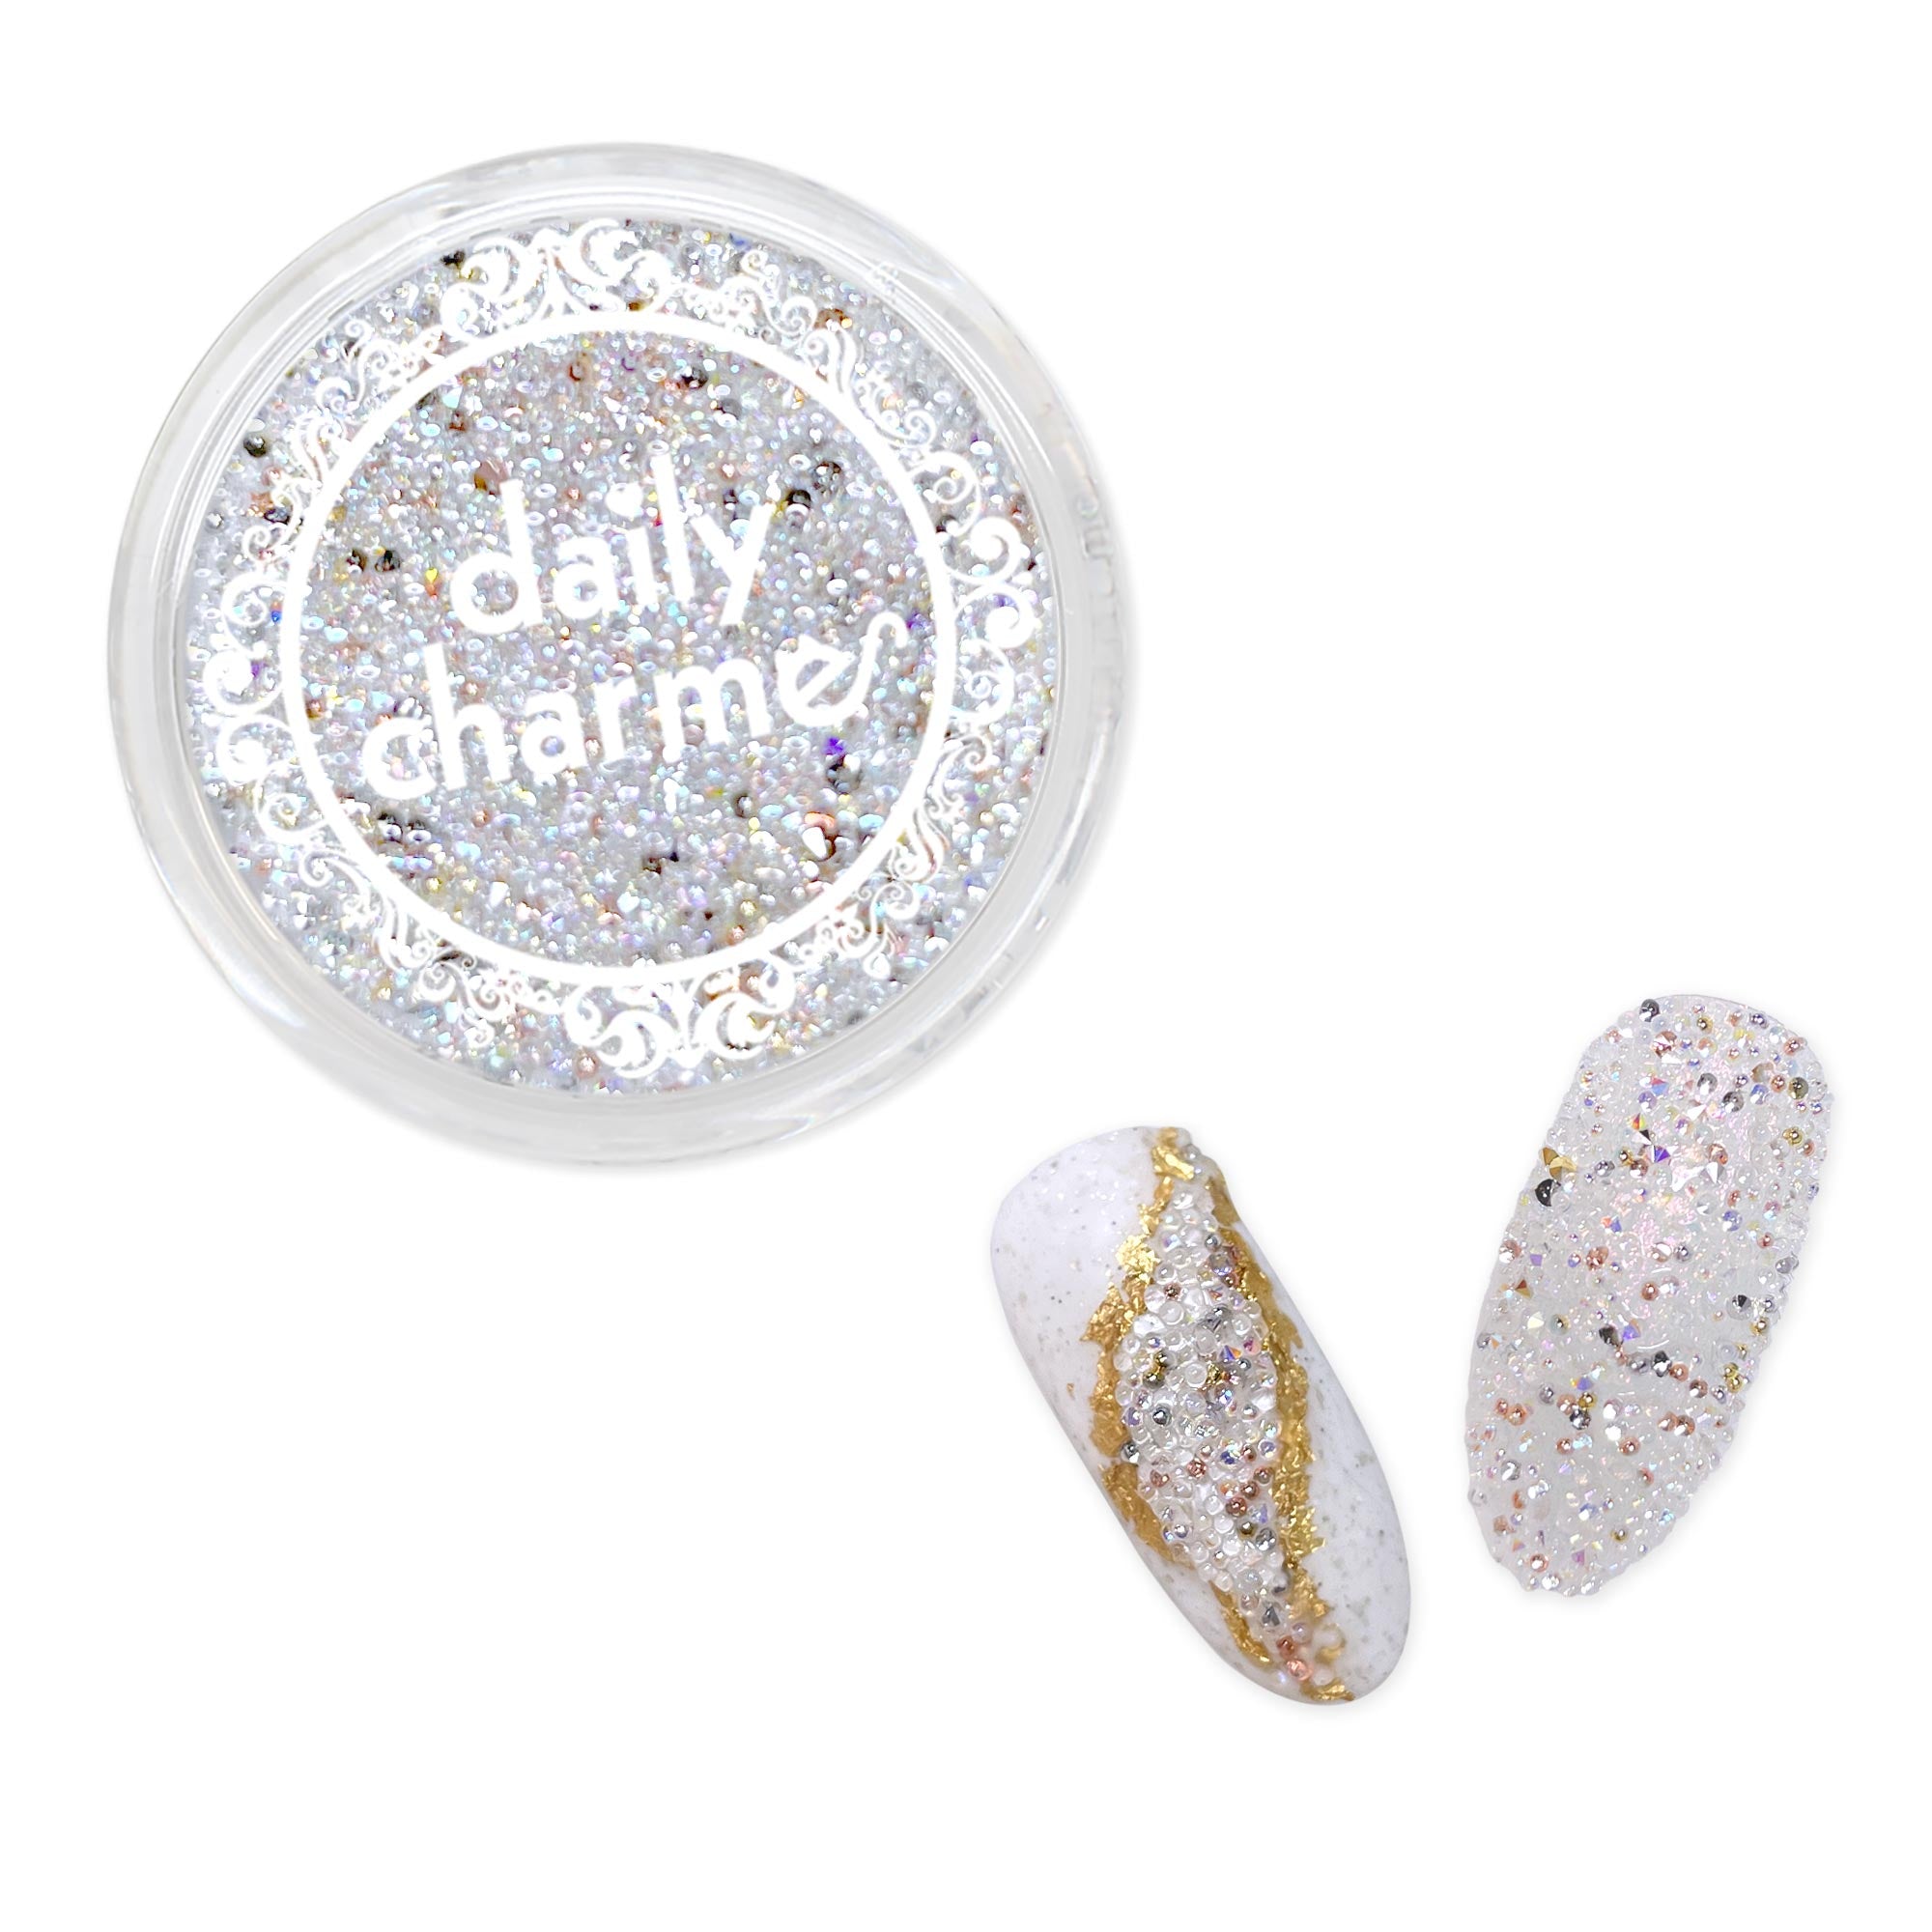 Charme Crystal Sparkle Pixie / Aurora Sands Nail Art Decor AB Rainbow Iridescent Summer